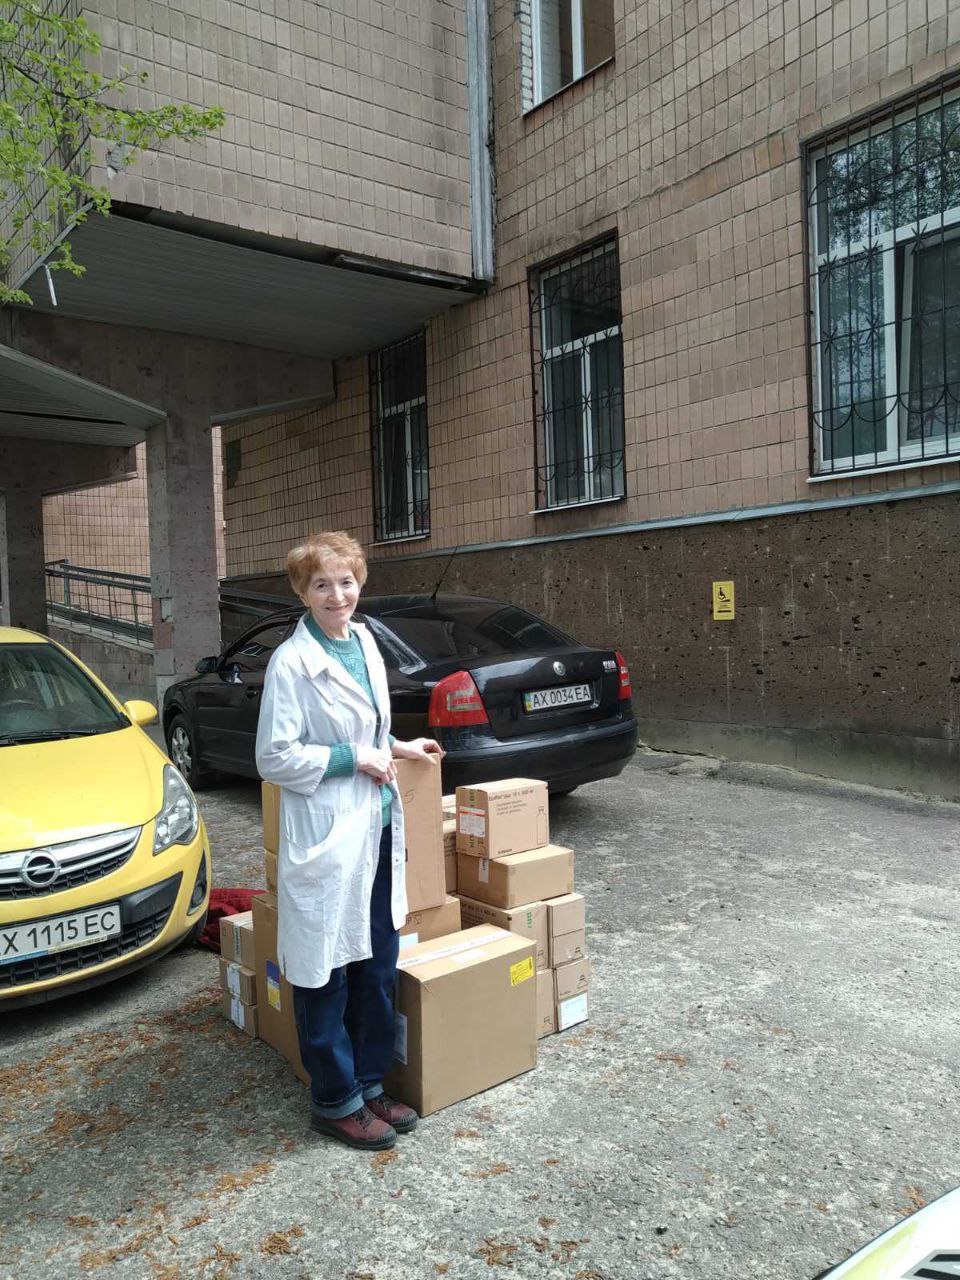 3 Kharkiv hospitals have received medical supplies